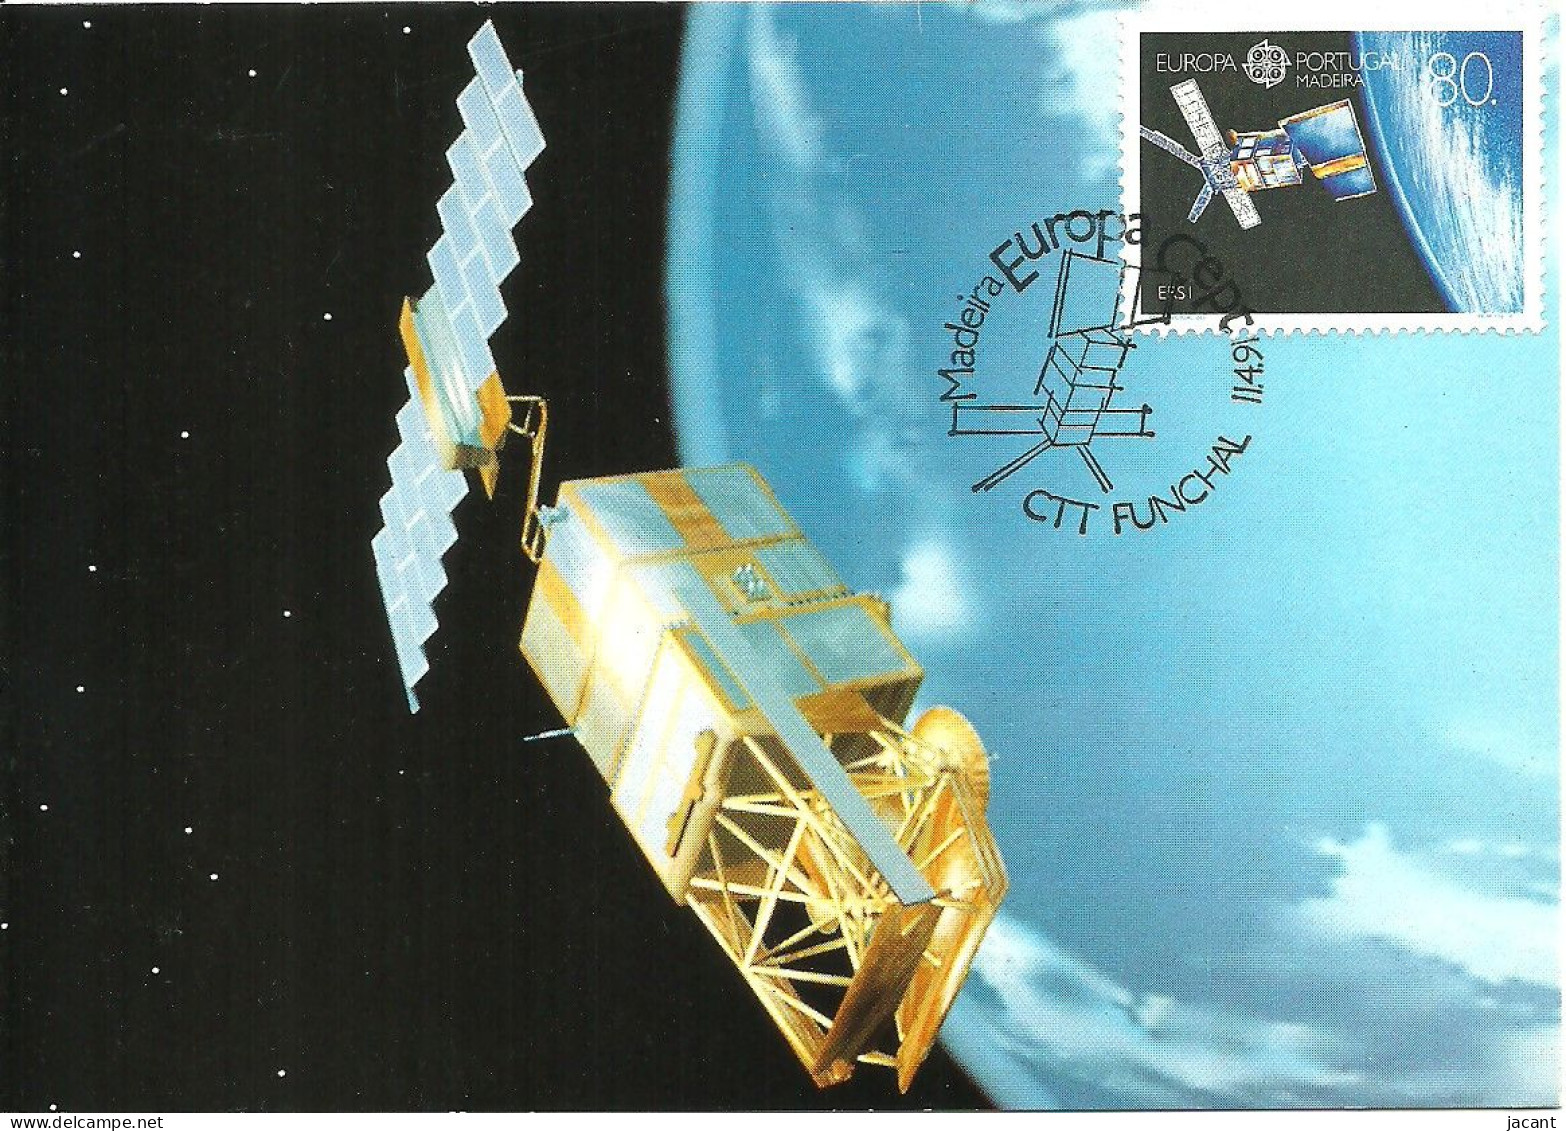 30835 - Carte Maximum - Portugal Madeira - Europa - Satetite ERS-1 Satellite - Cartes-maximum (CM)